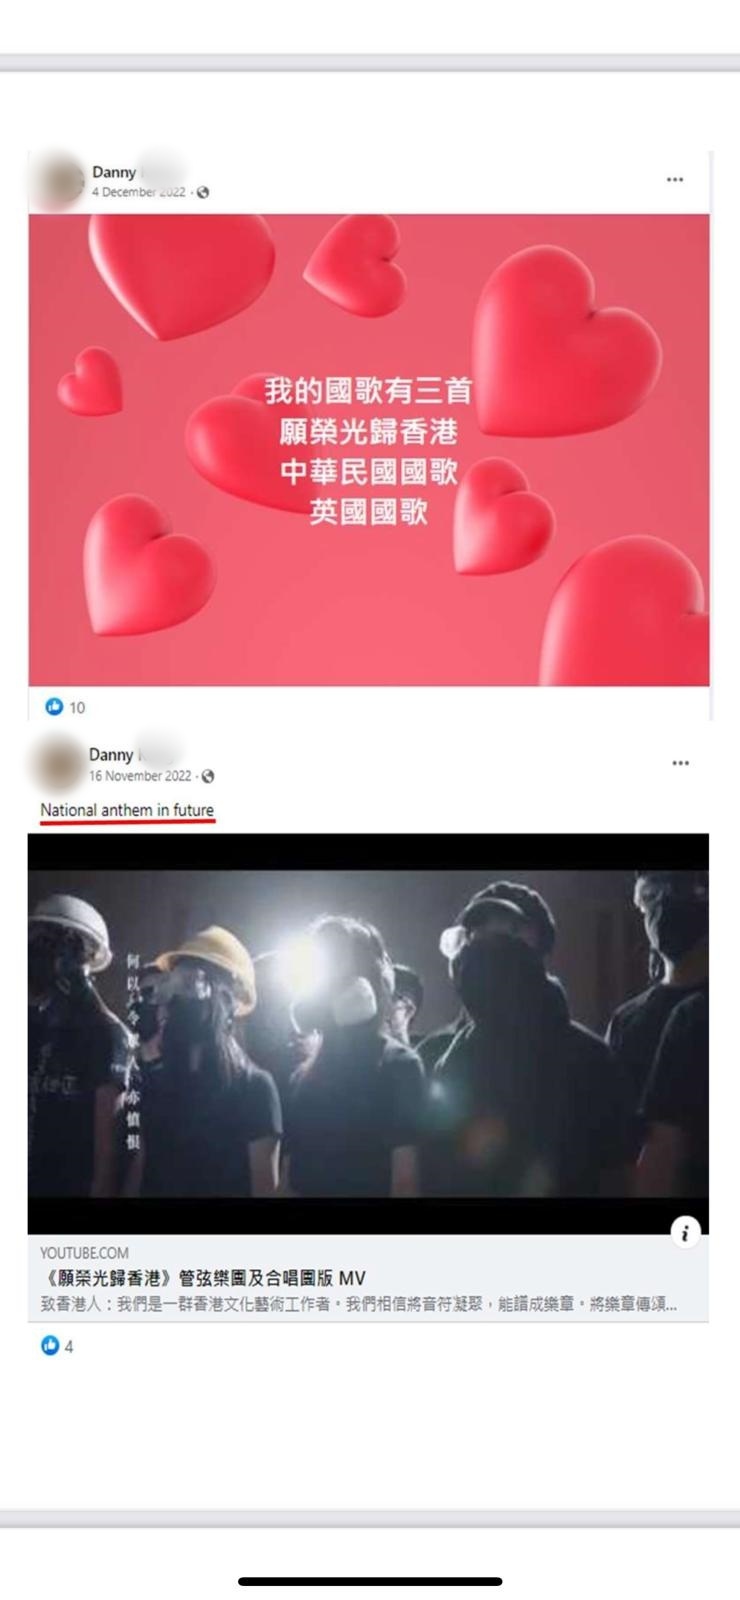 被捕人的社交平台多次轉載「獨歌」《願榮光歸香港》 並稱之為「未來的國歌」等。